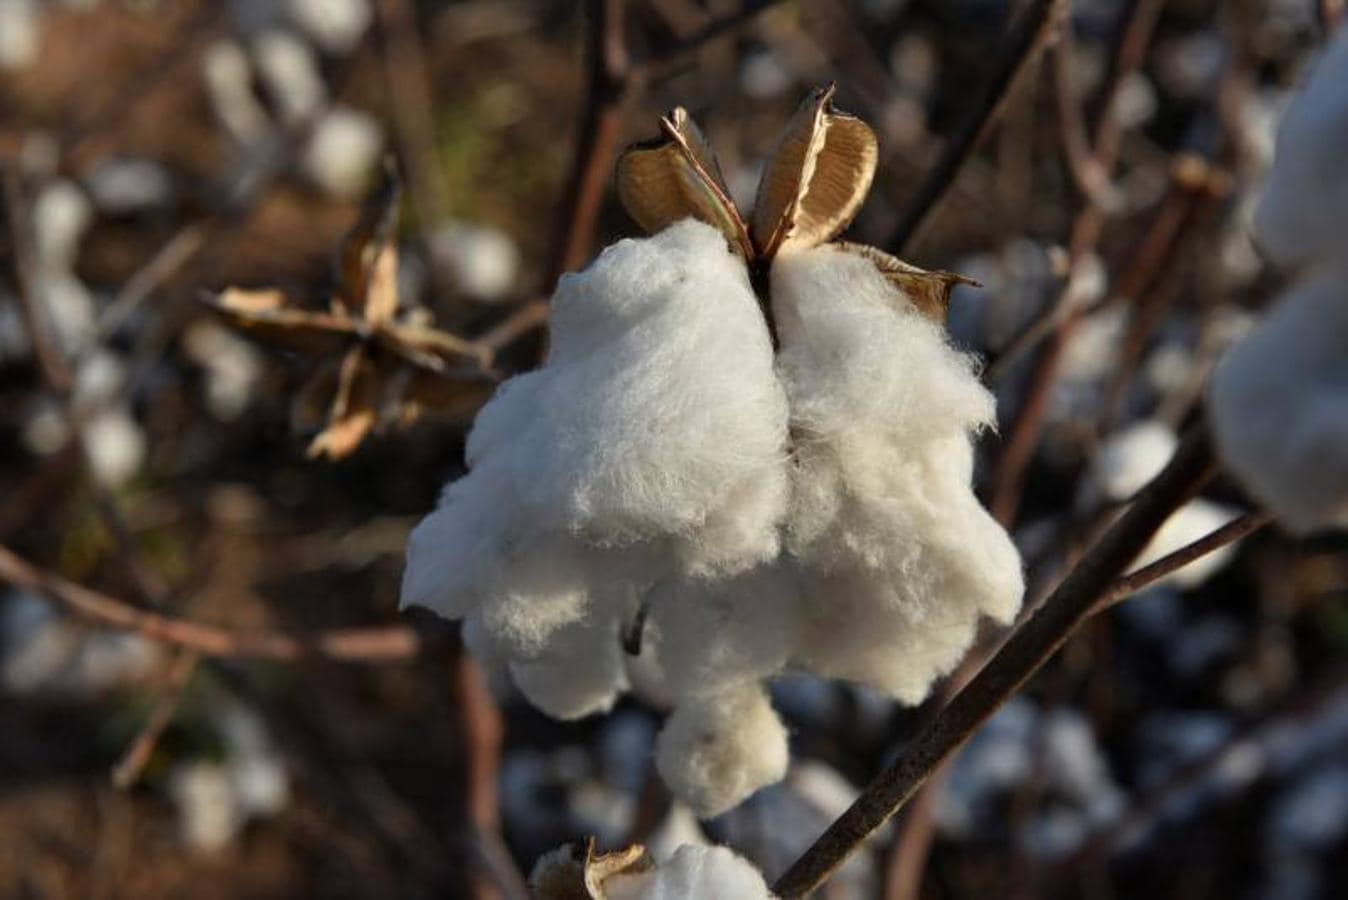 Semillas de algodón que se han limpiado de la fibra de algodón en Southern Kansas Cotton Cotton Growers Co-op cerca de Anthony, Kansas, EE. UU. 